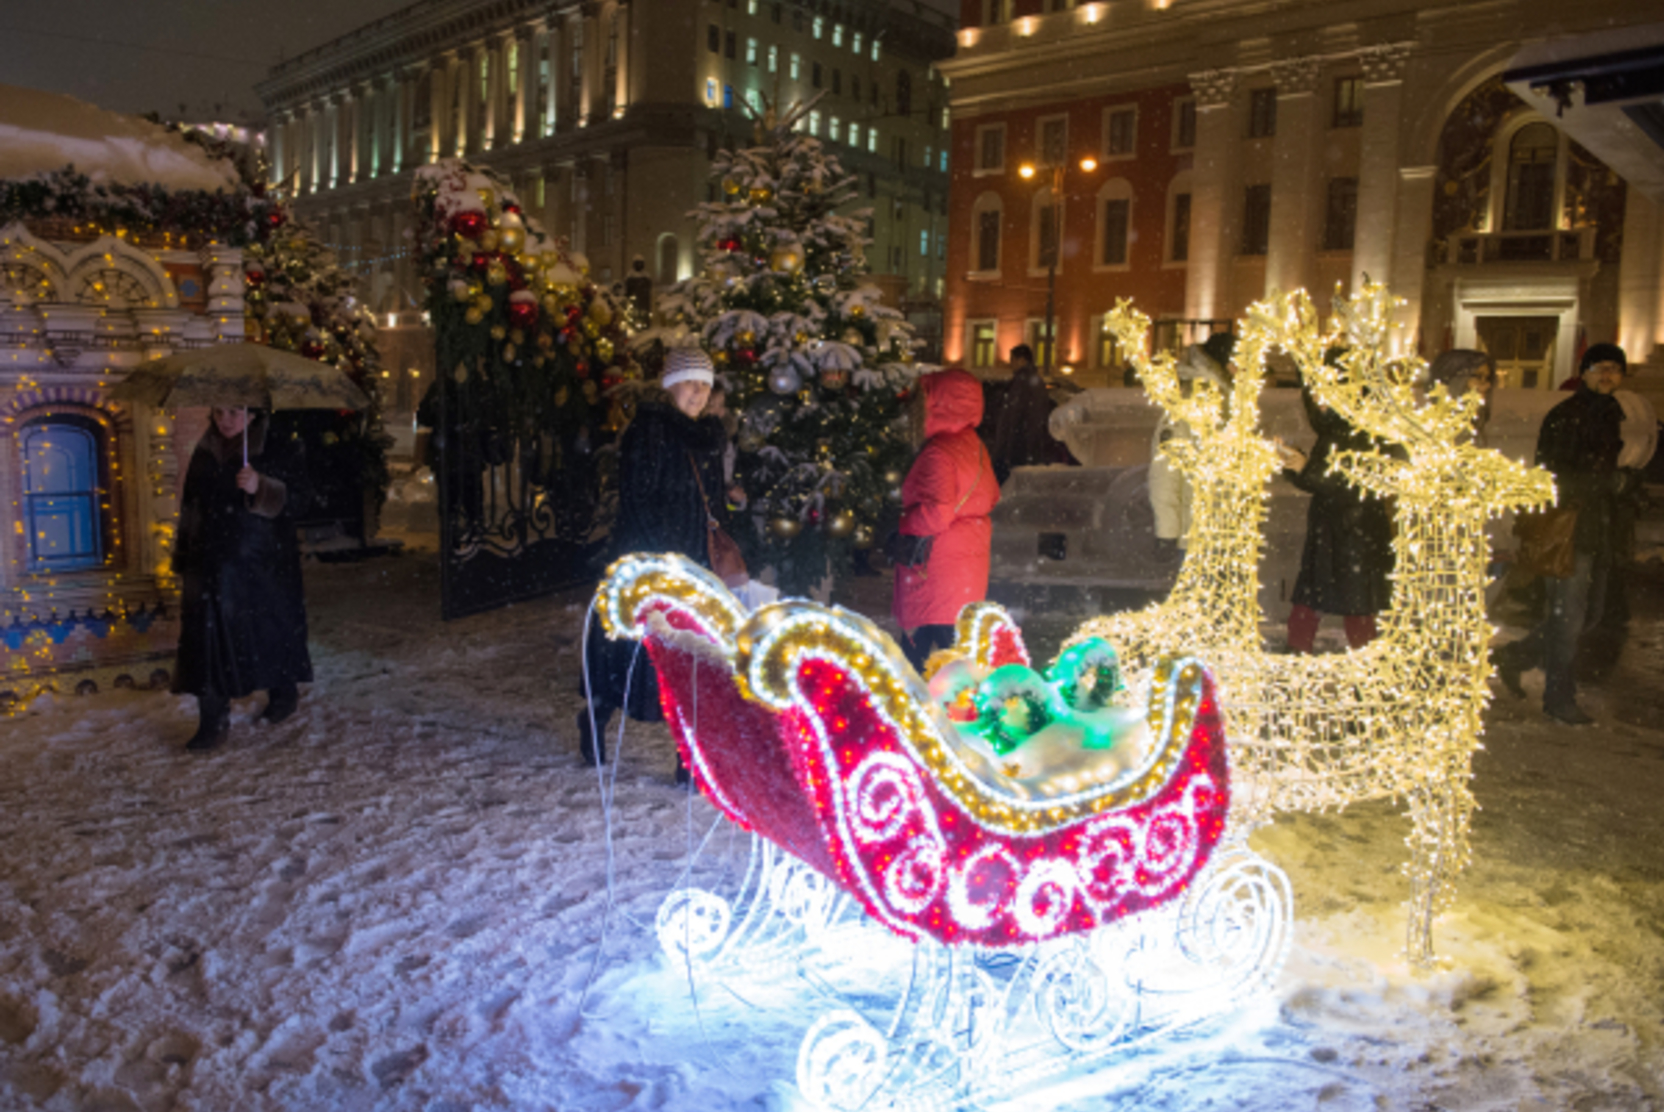 Москва вошла в топ-10 популярных городов России для встречи Нового года